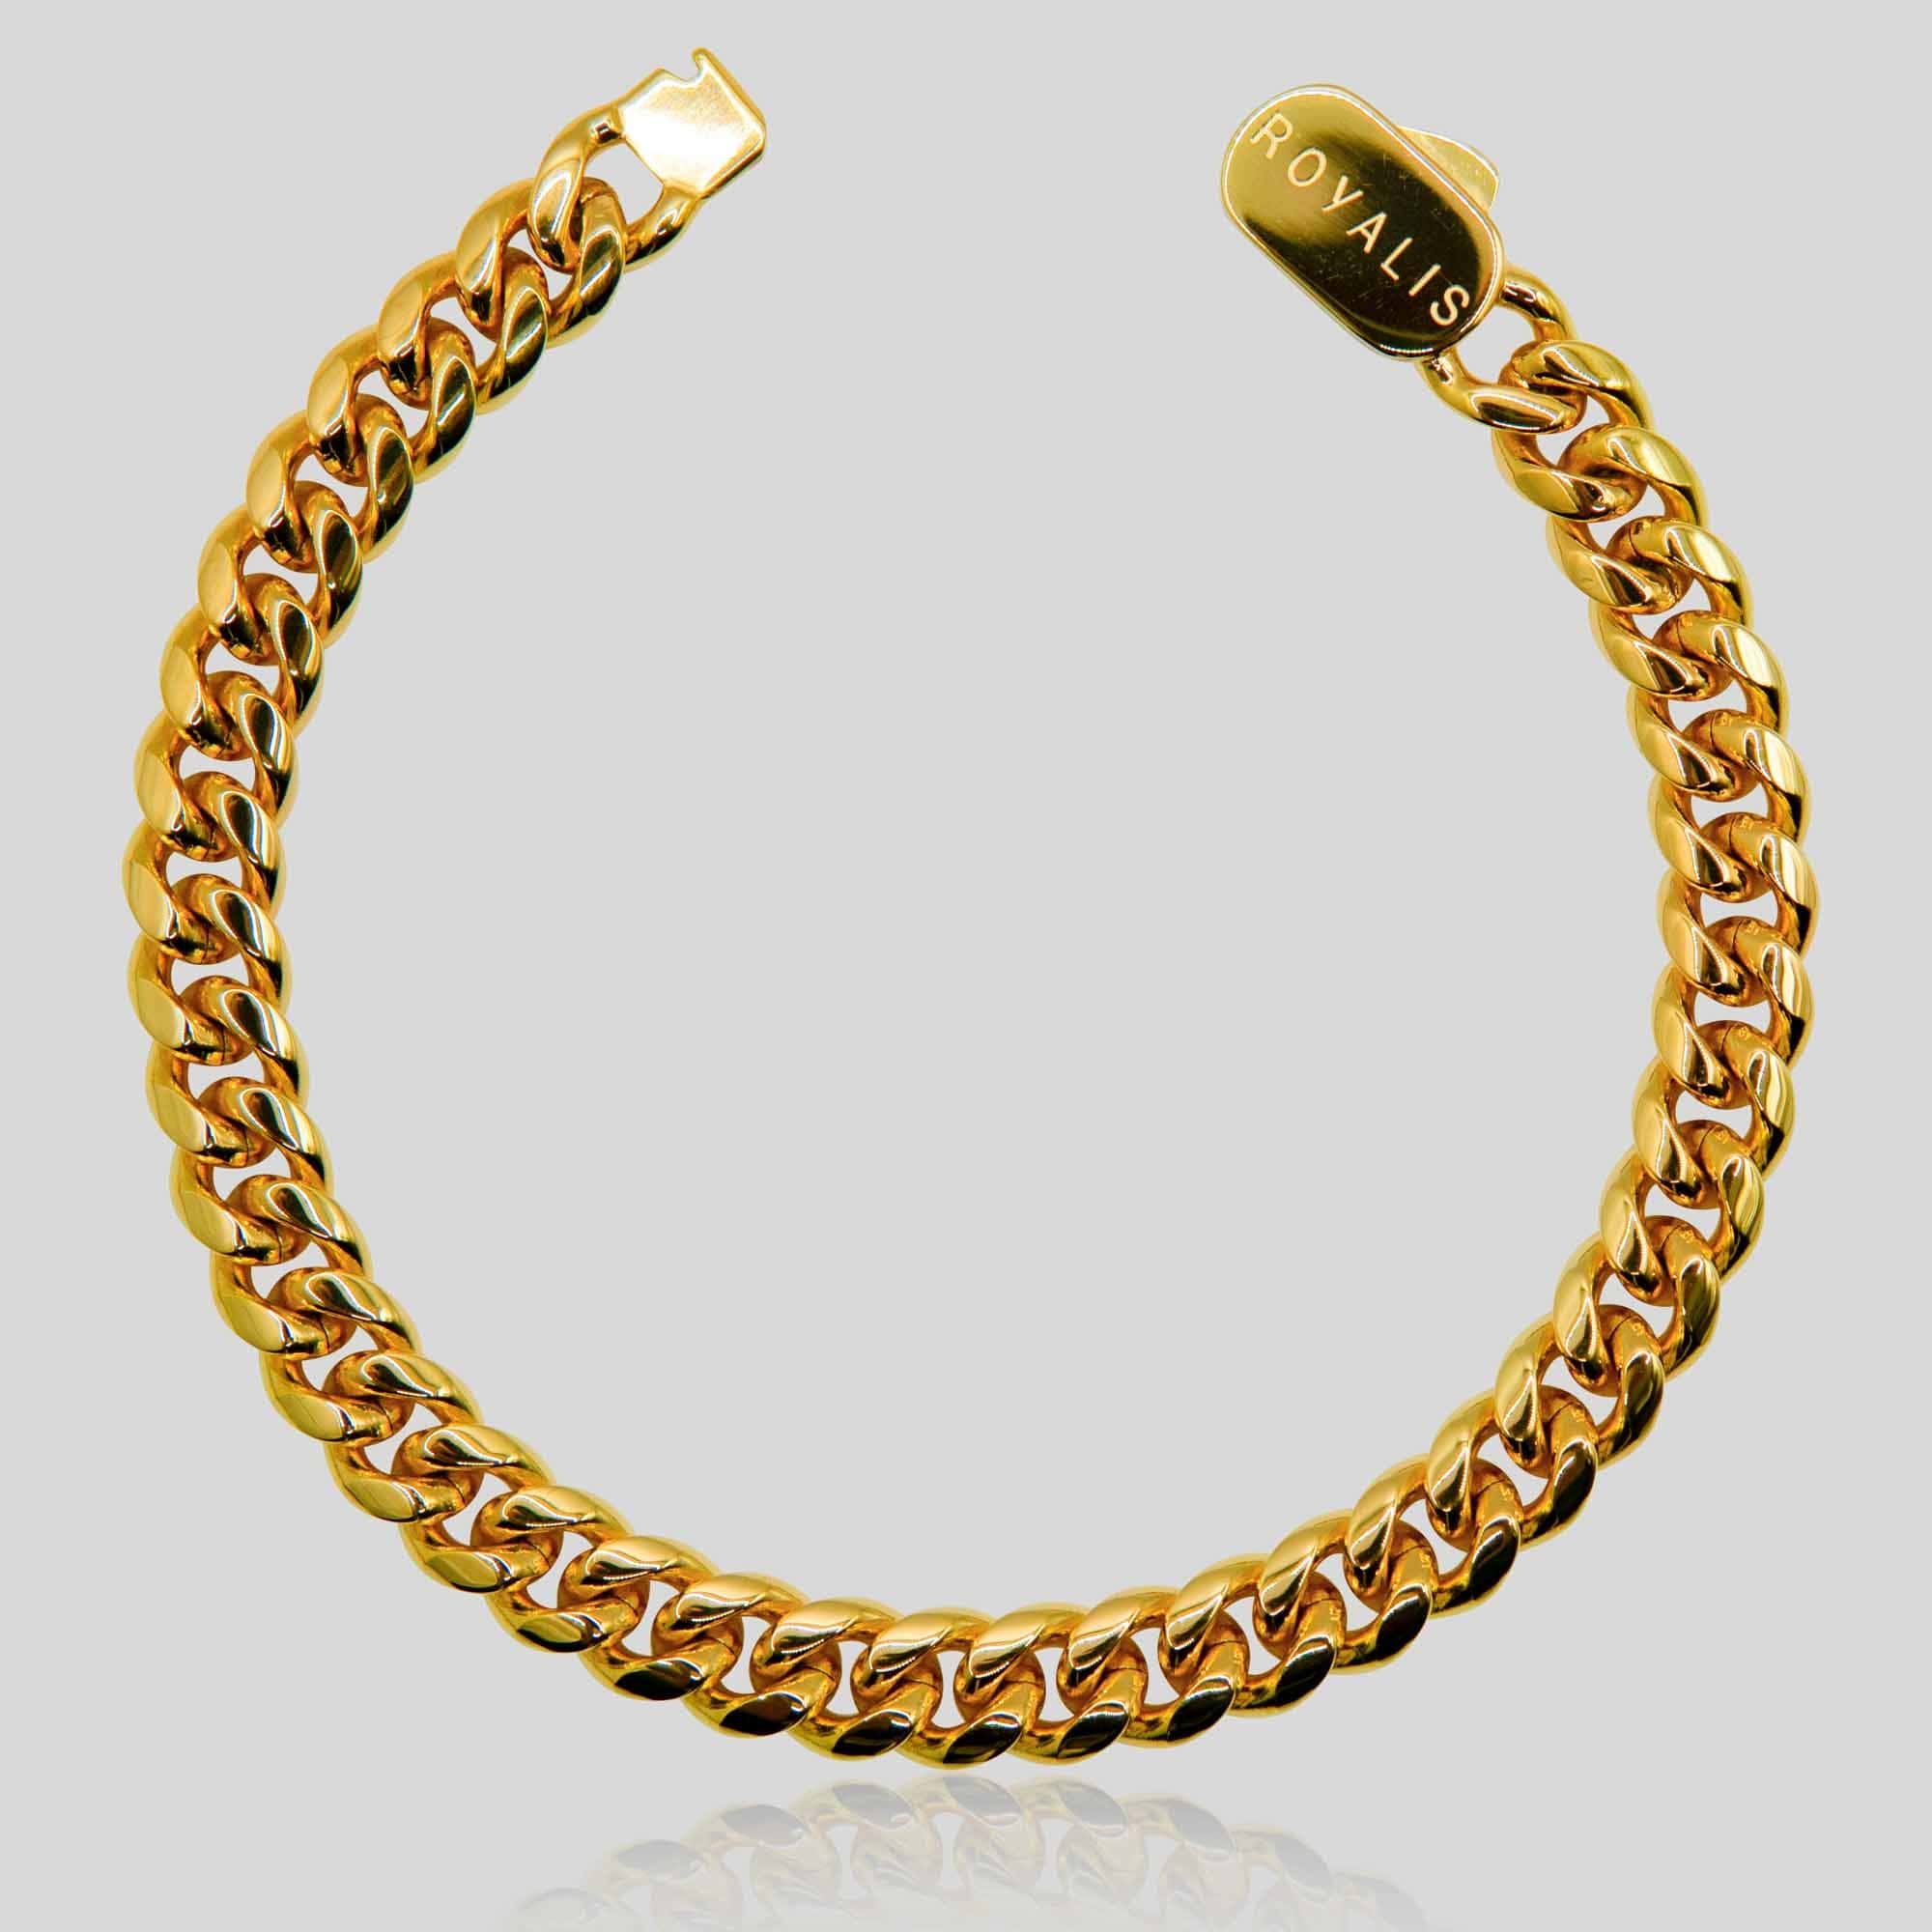 sell gold bracelets Melbourne